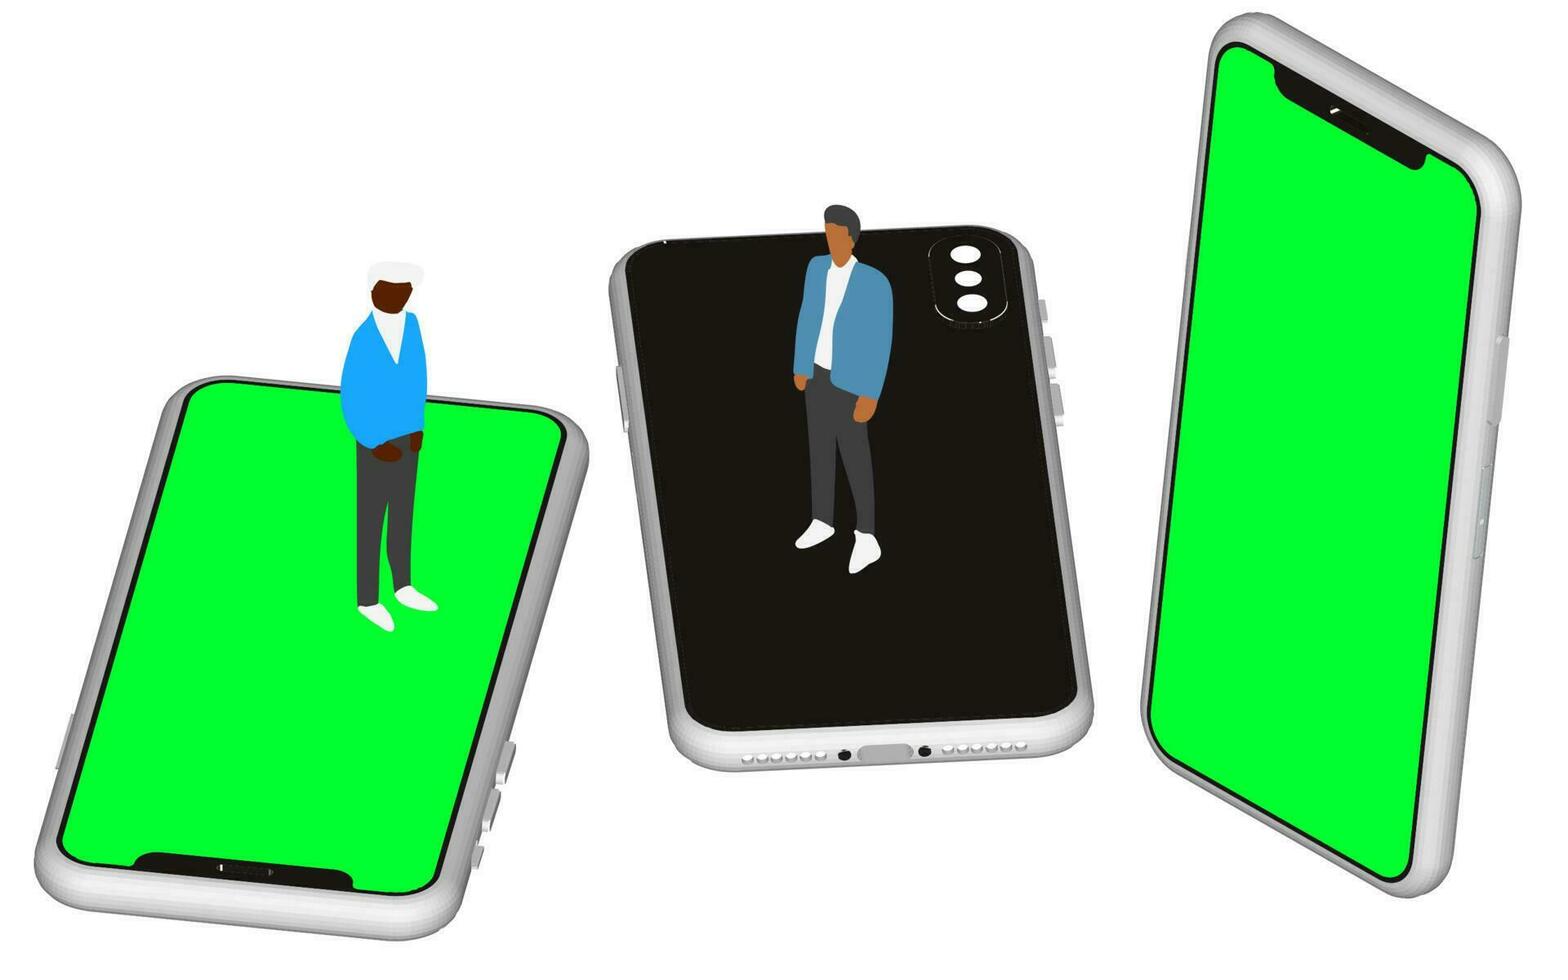 realistisch isometrisch Telefon Attrappe, Lehrmodell, Simulation. Smartphone einstellen im ein zellular Konzept bietet an ein modern und Fachmann sehen. hoch Qualität 3d Vektor Abbildungen zum App und Netz Präsentationen